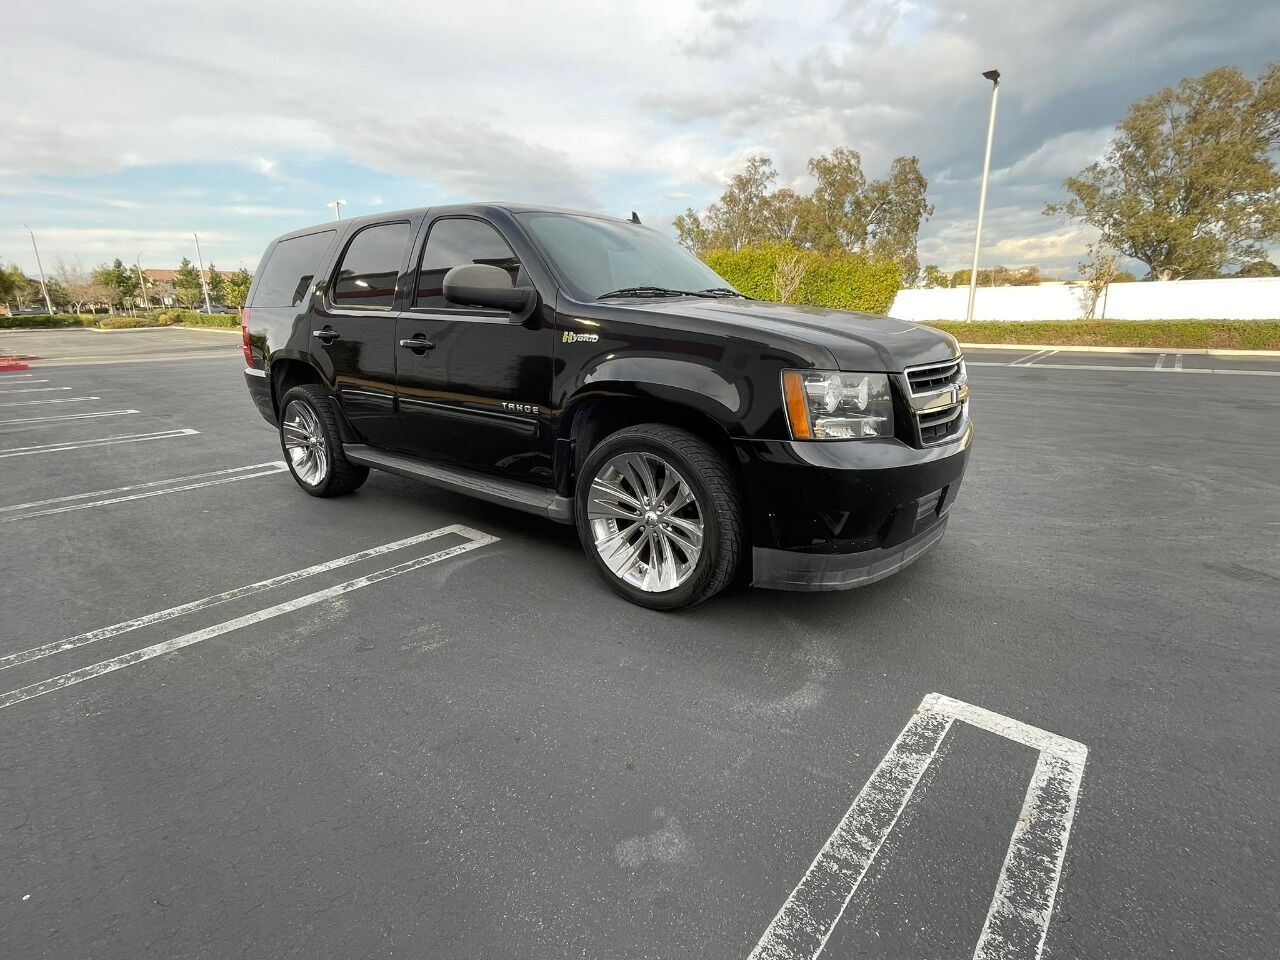 2012 Chevrolet Tahoe For Sale In Rialto, CA - Carsforsale.com®